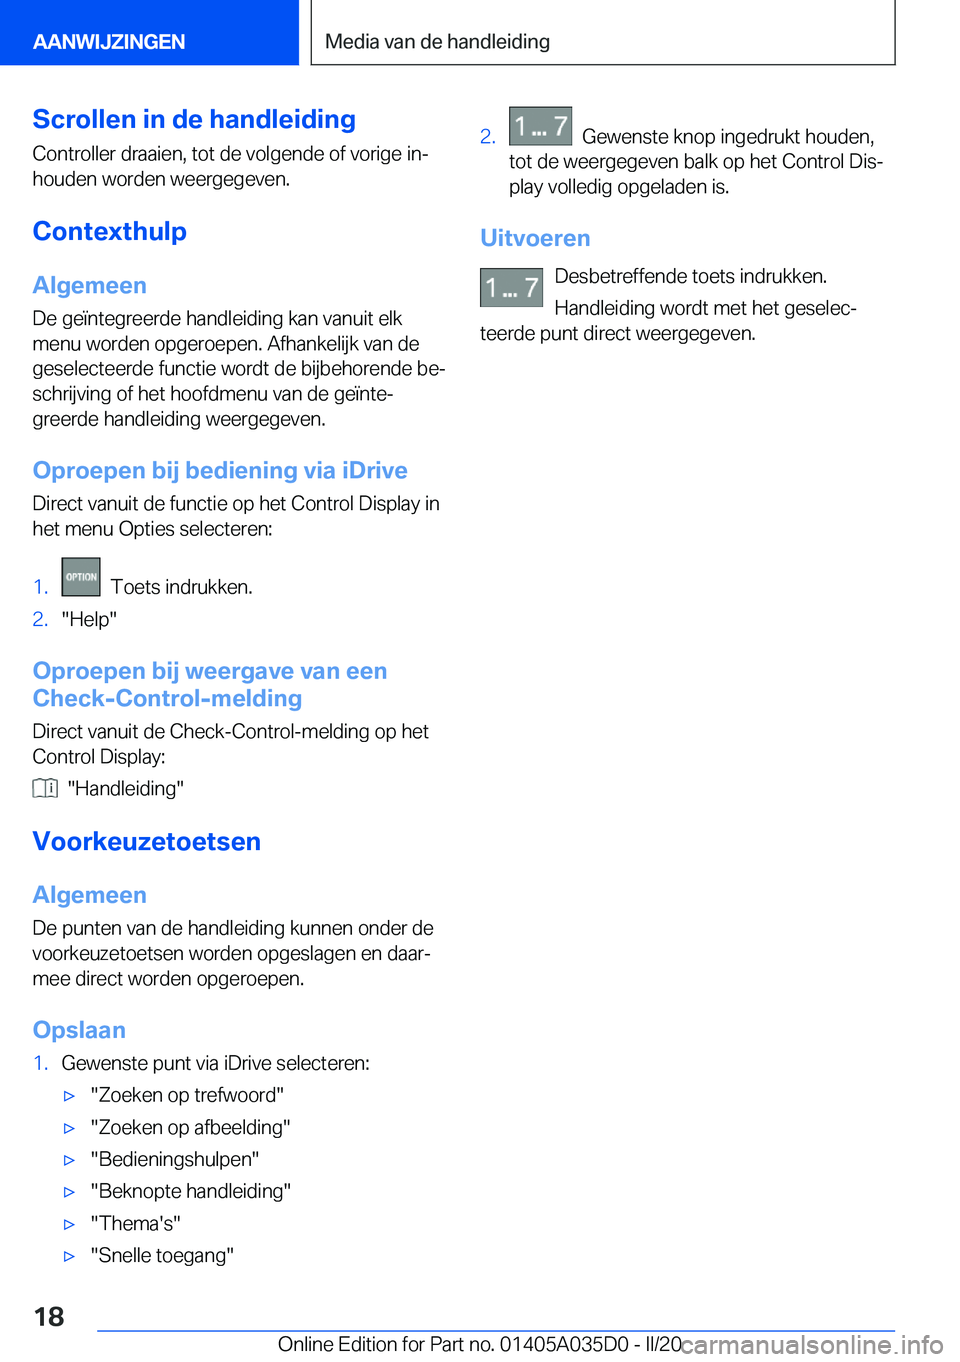 BMW X4 2020  Instructieboekjes (in Dutch) �S�c�r�o�l�l�e�n��i�n��d�e��h�a�n�d�l�e�i�d�i�n�g
�C�o�n�t�r�o�l�l�e�r��d�r�a�a�i�e�n�,��t�o�t��d�e��v�o�l�g�e�n�d�e��o�f��v�o�r�i�g�e��i�nj
�h�o�u�d�e�n��w�o�r�d�e�n��w�e�e�r�g�e�g�e�v�e